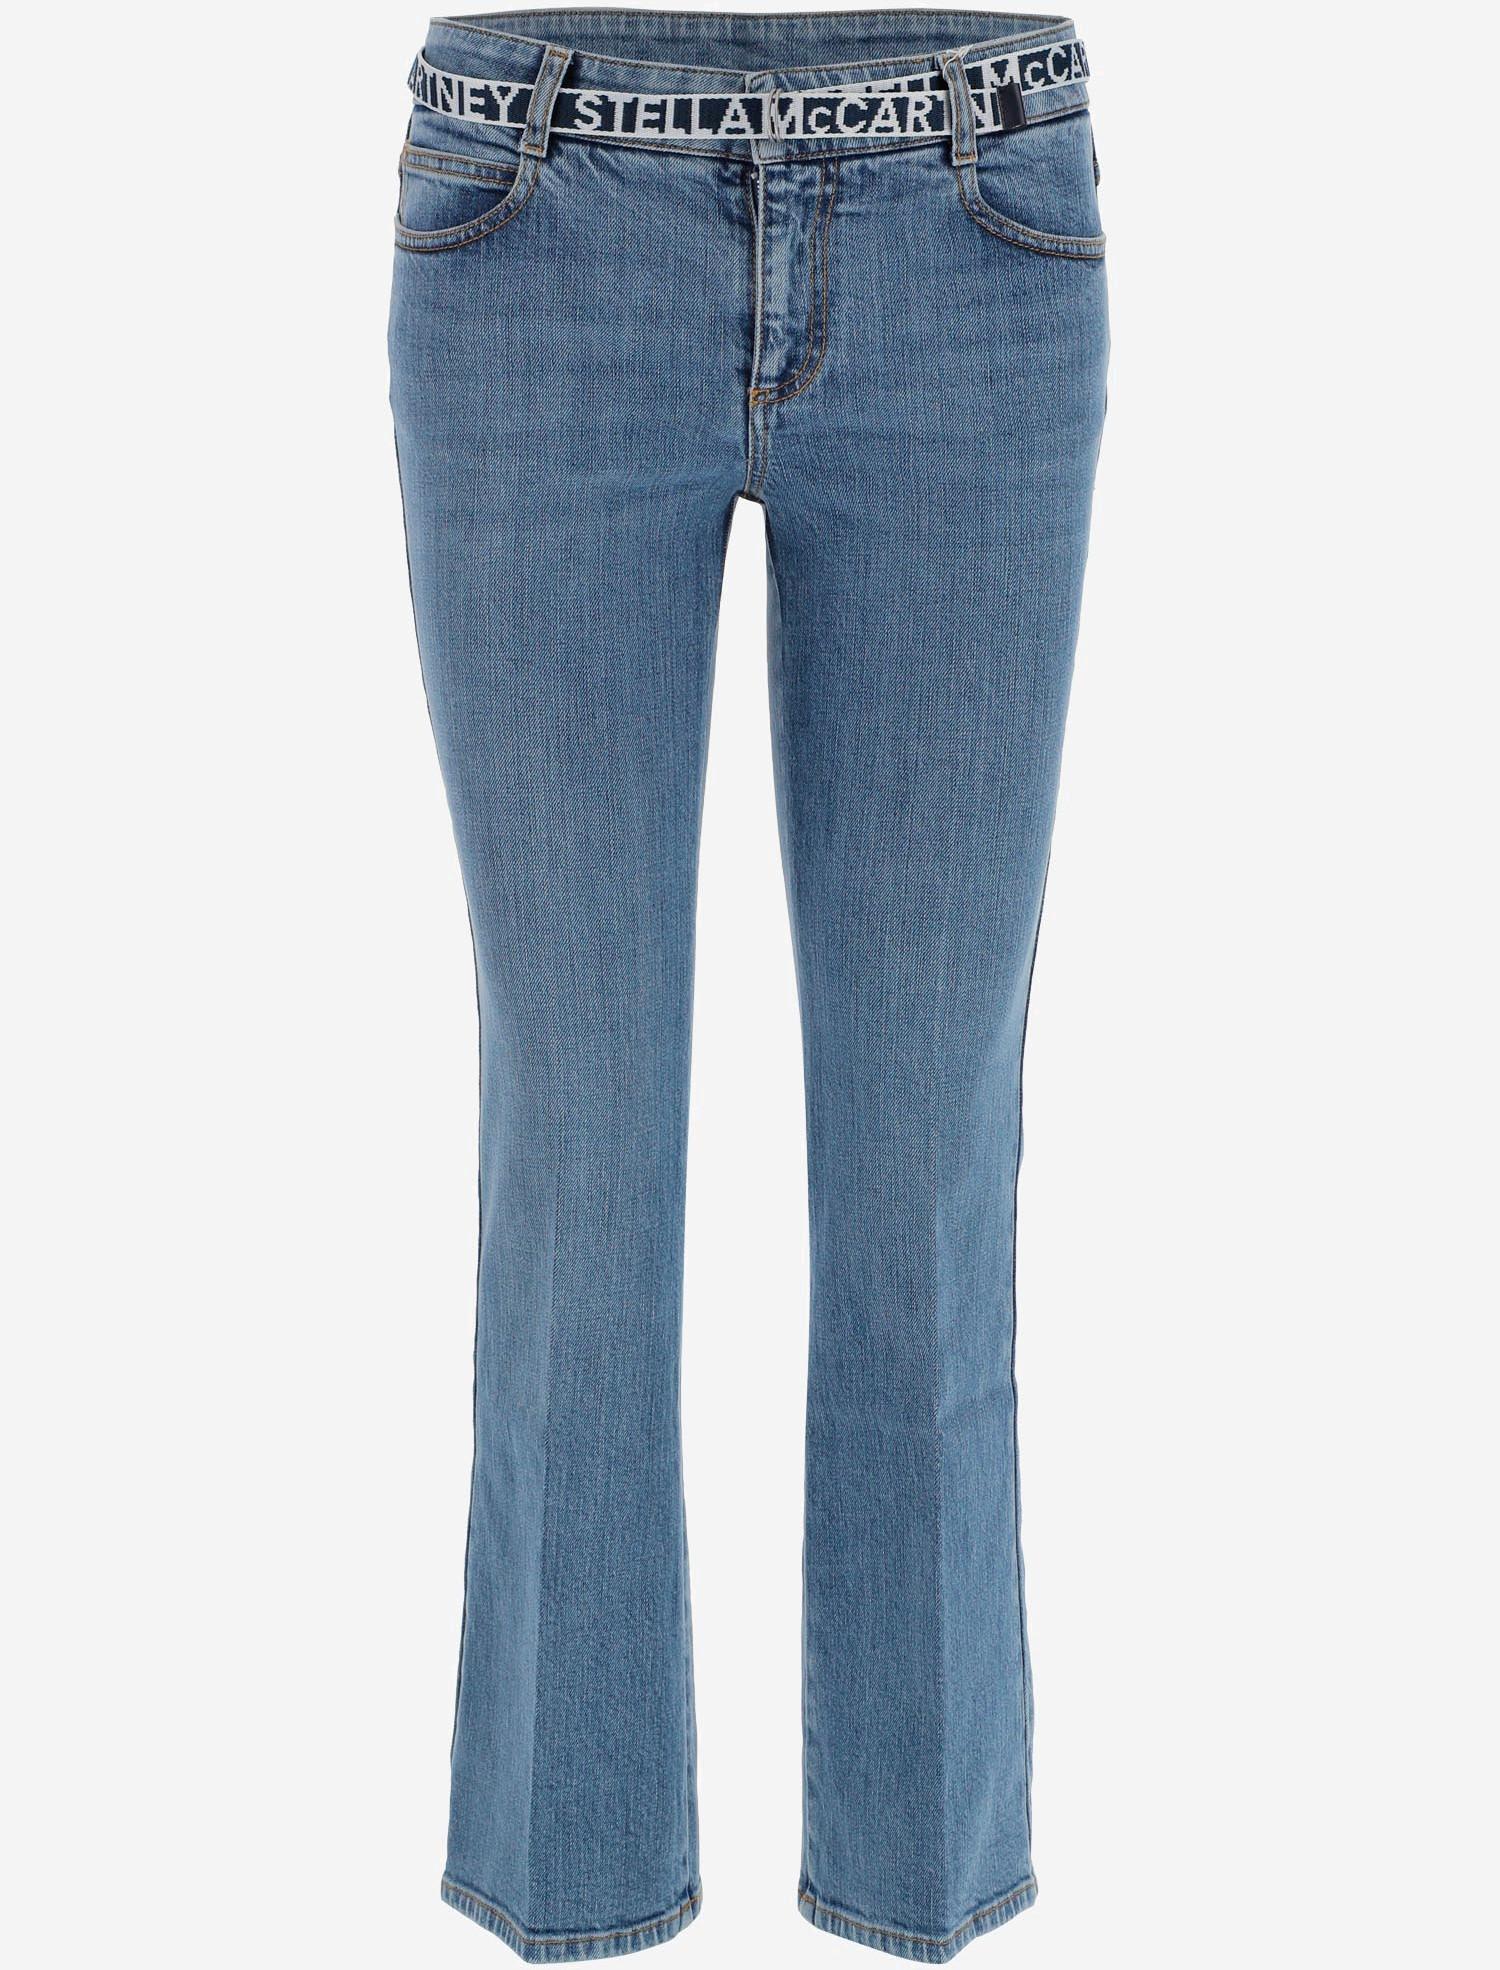 light blue cotton jeans